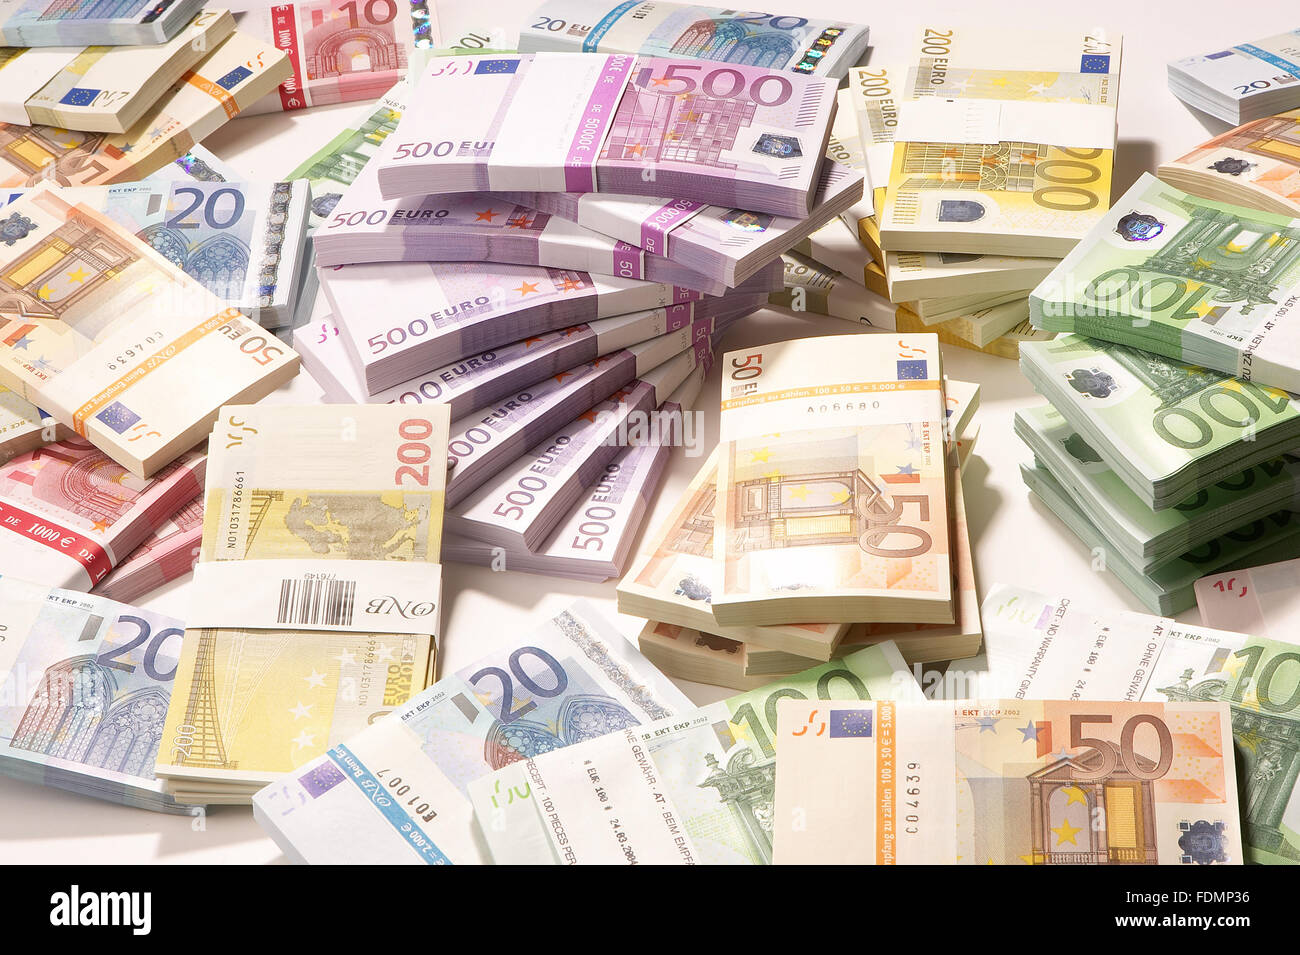 L Argent Euro Pile De Billets En Euros Photo Stock Alamy